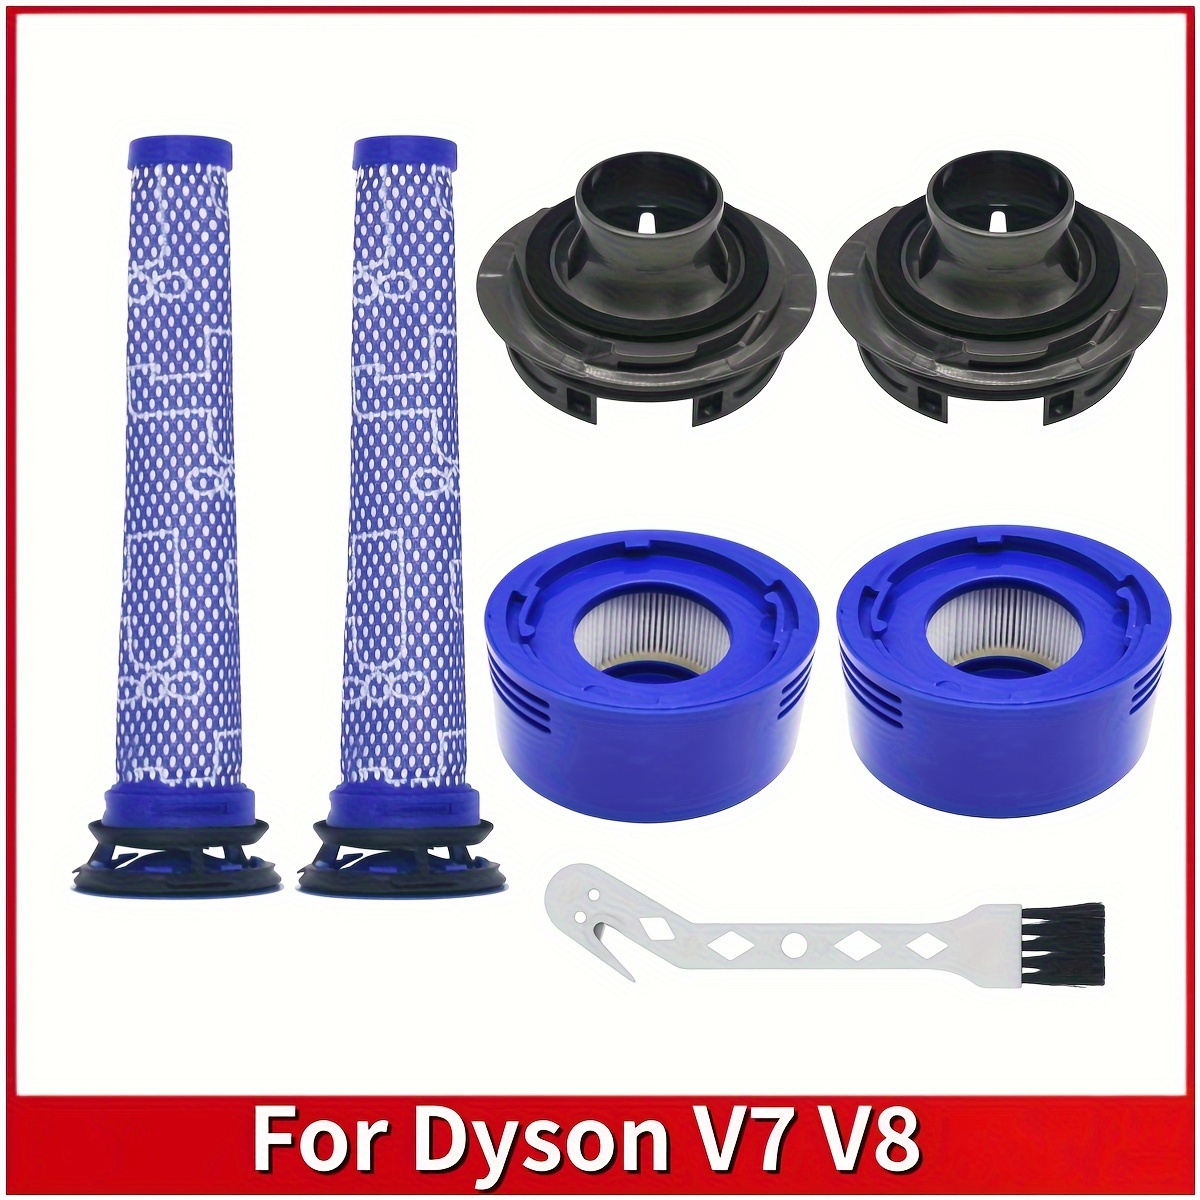 V7 V8 Filter For Dyson, 3 Pack Hepa Post-motor Filter Kit And Pre